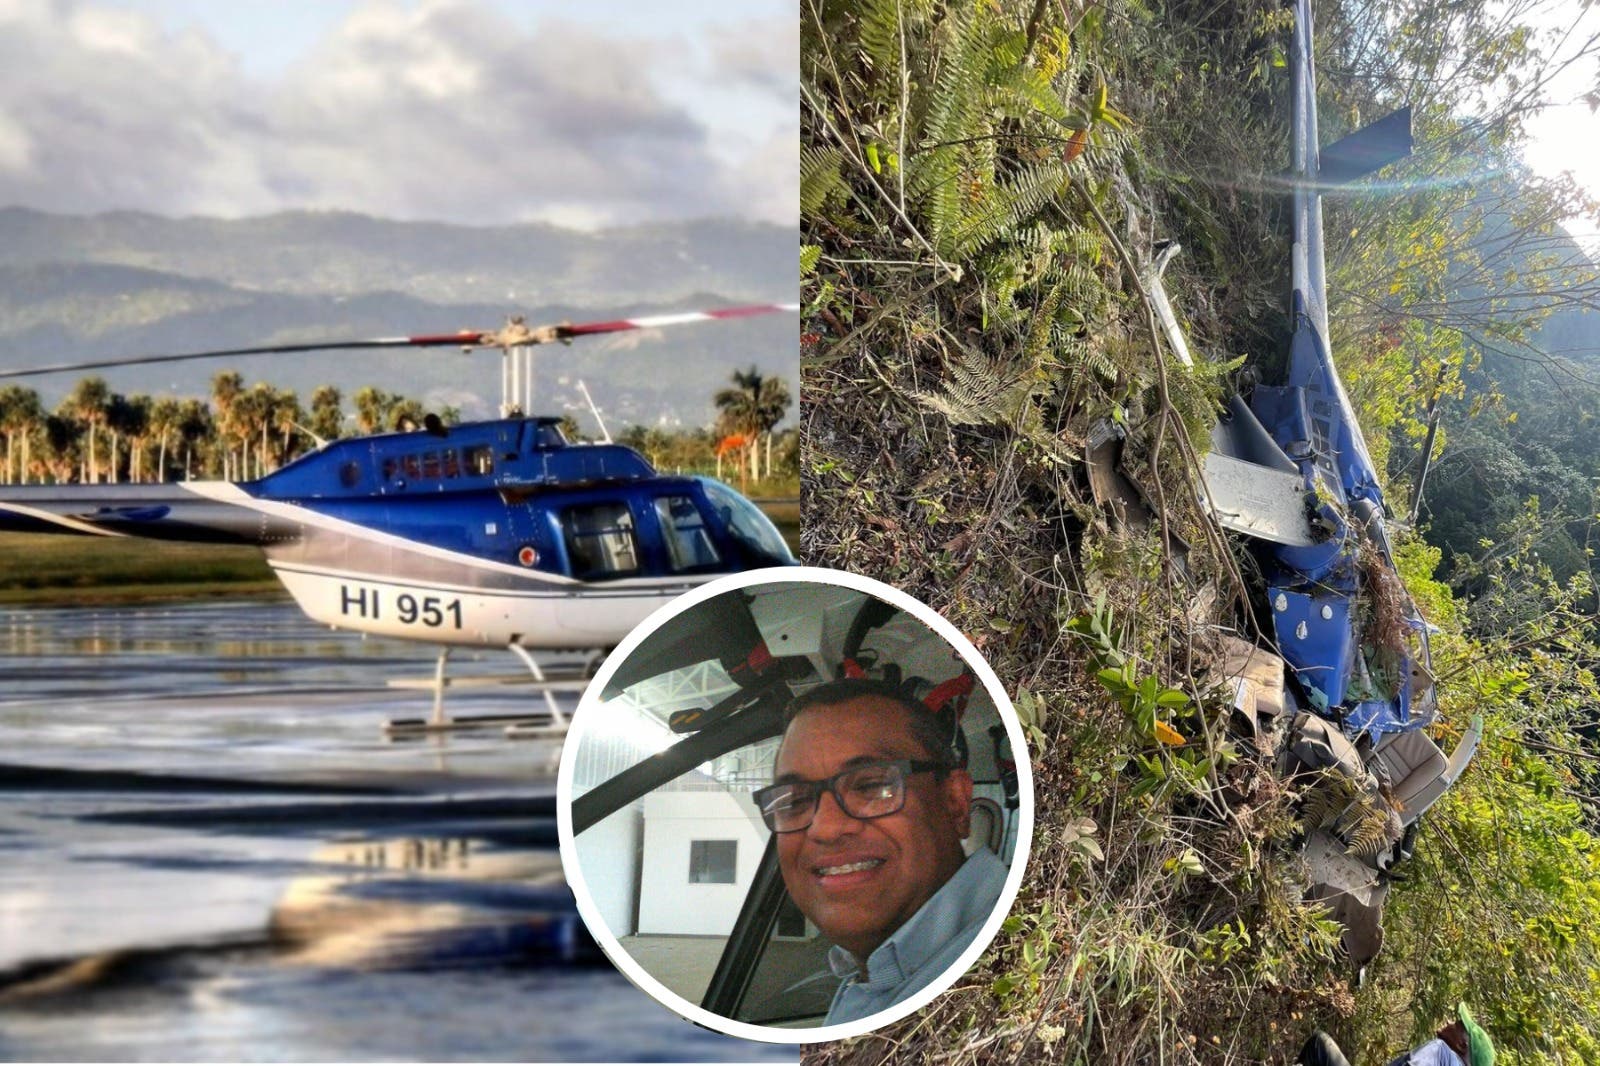 Muere piloto al caer helicóptero en Los Naranjos, San Cristóbal